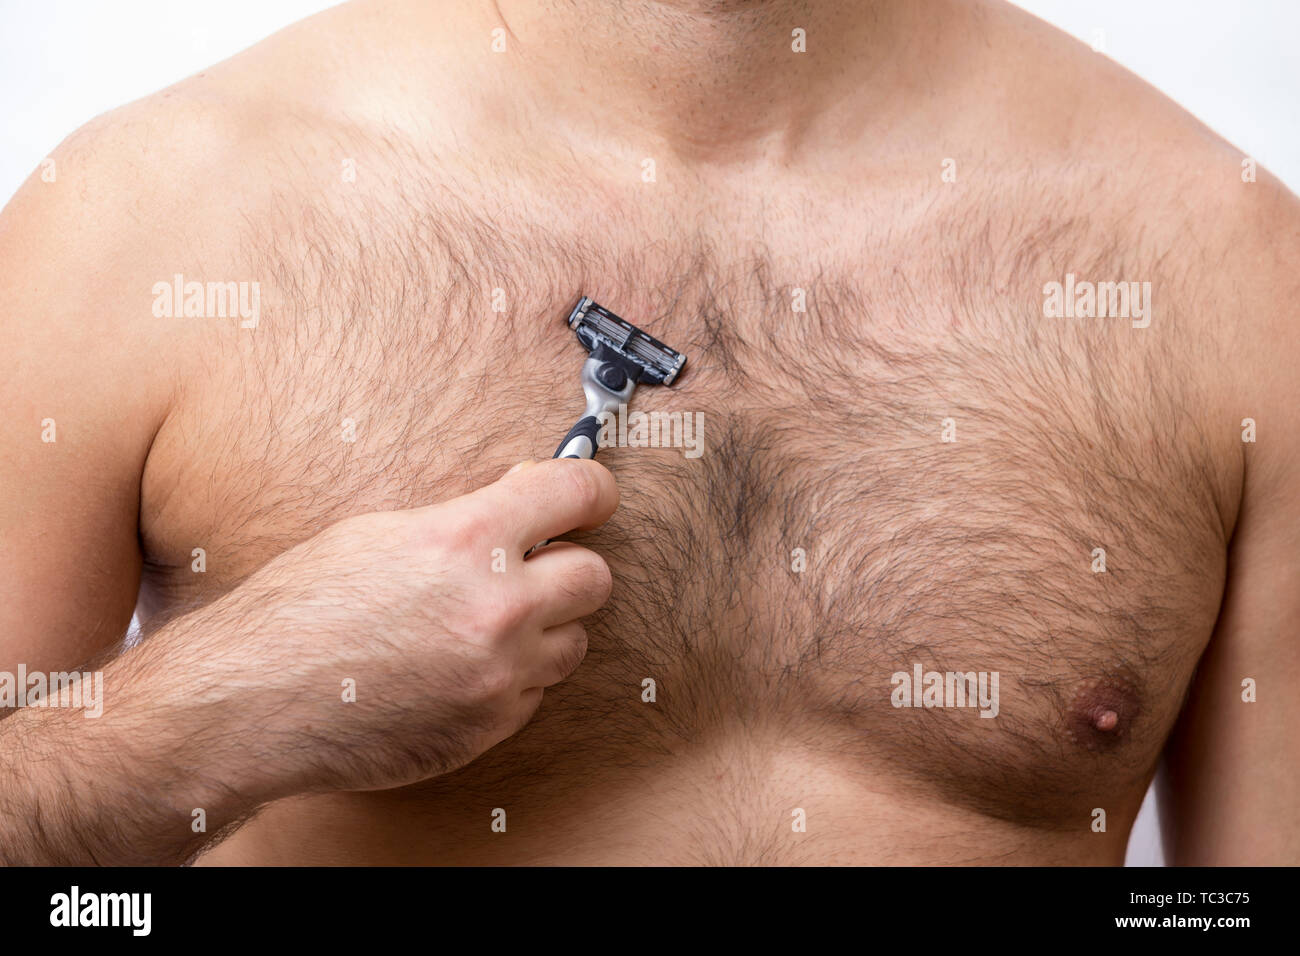 волосы на груди у мужчин брить или не брить (119) фото